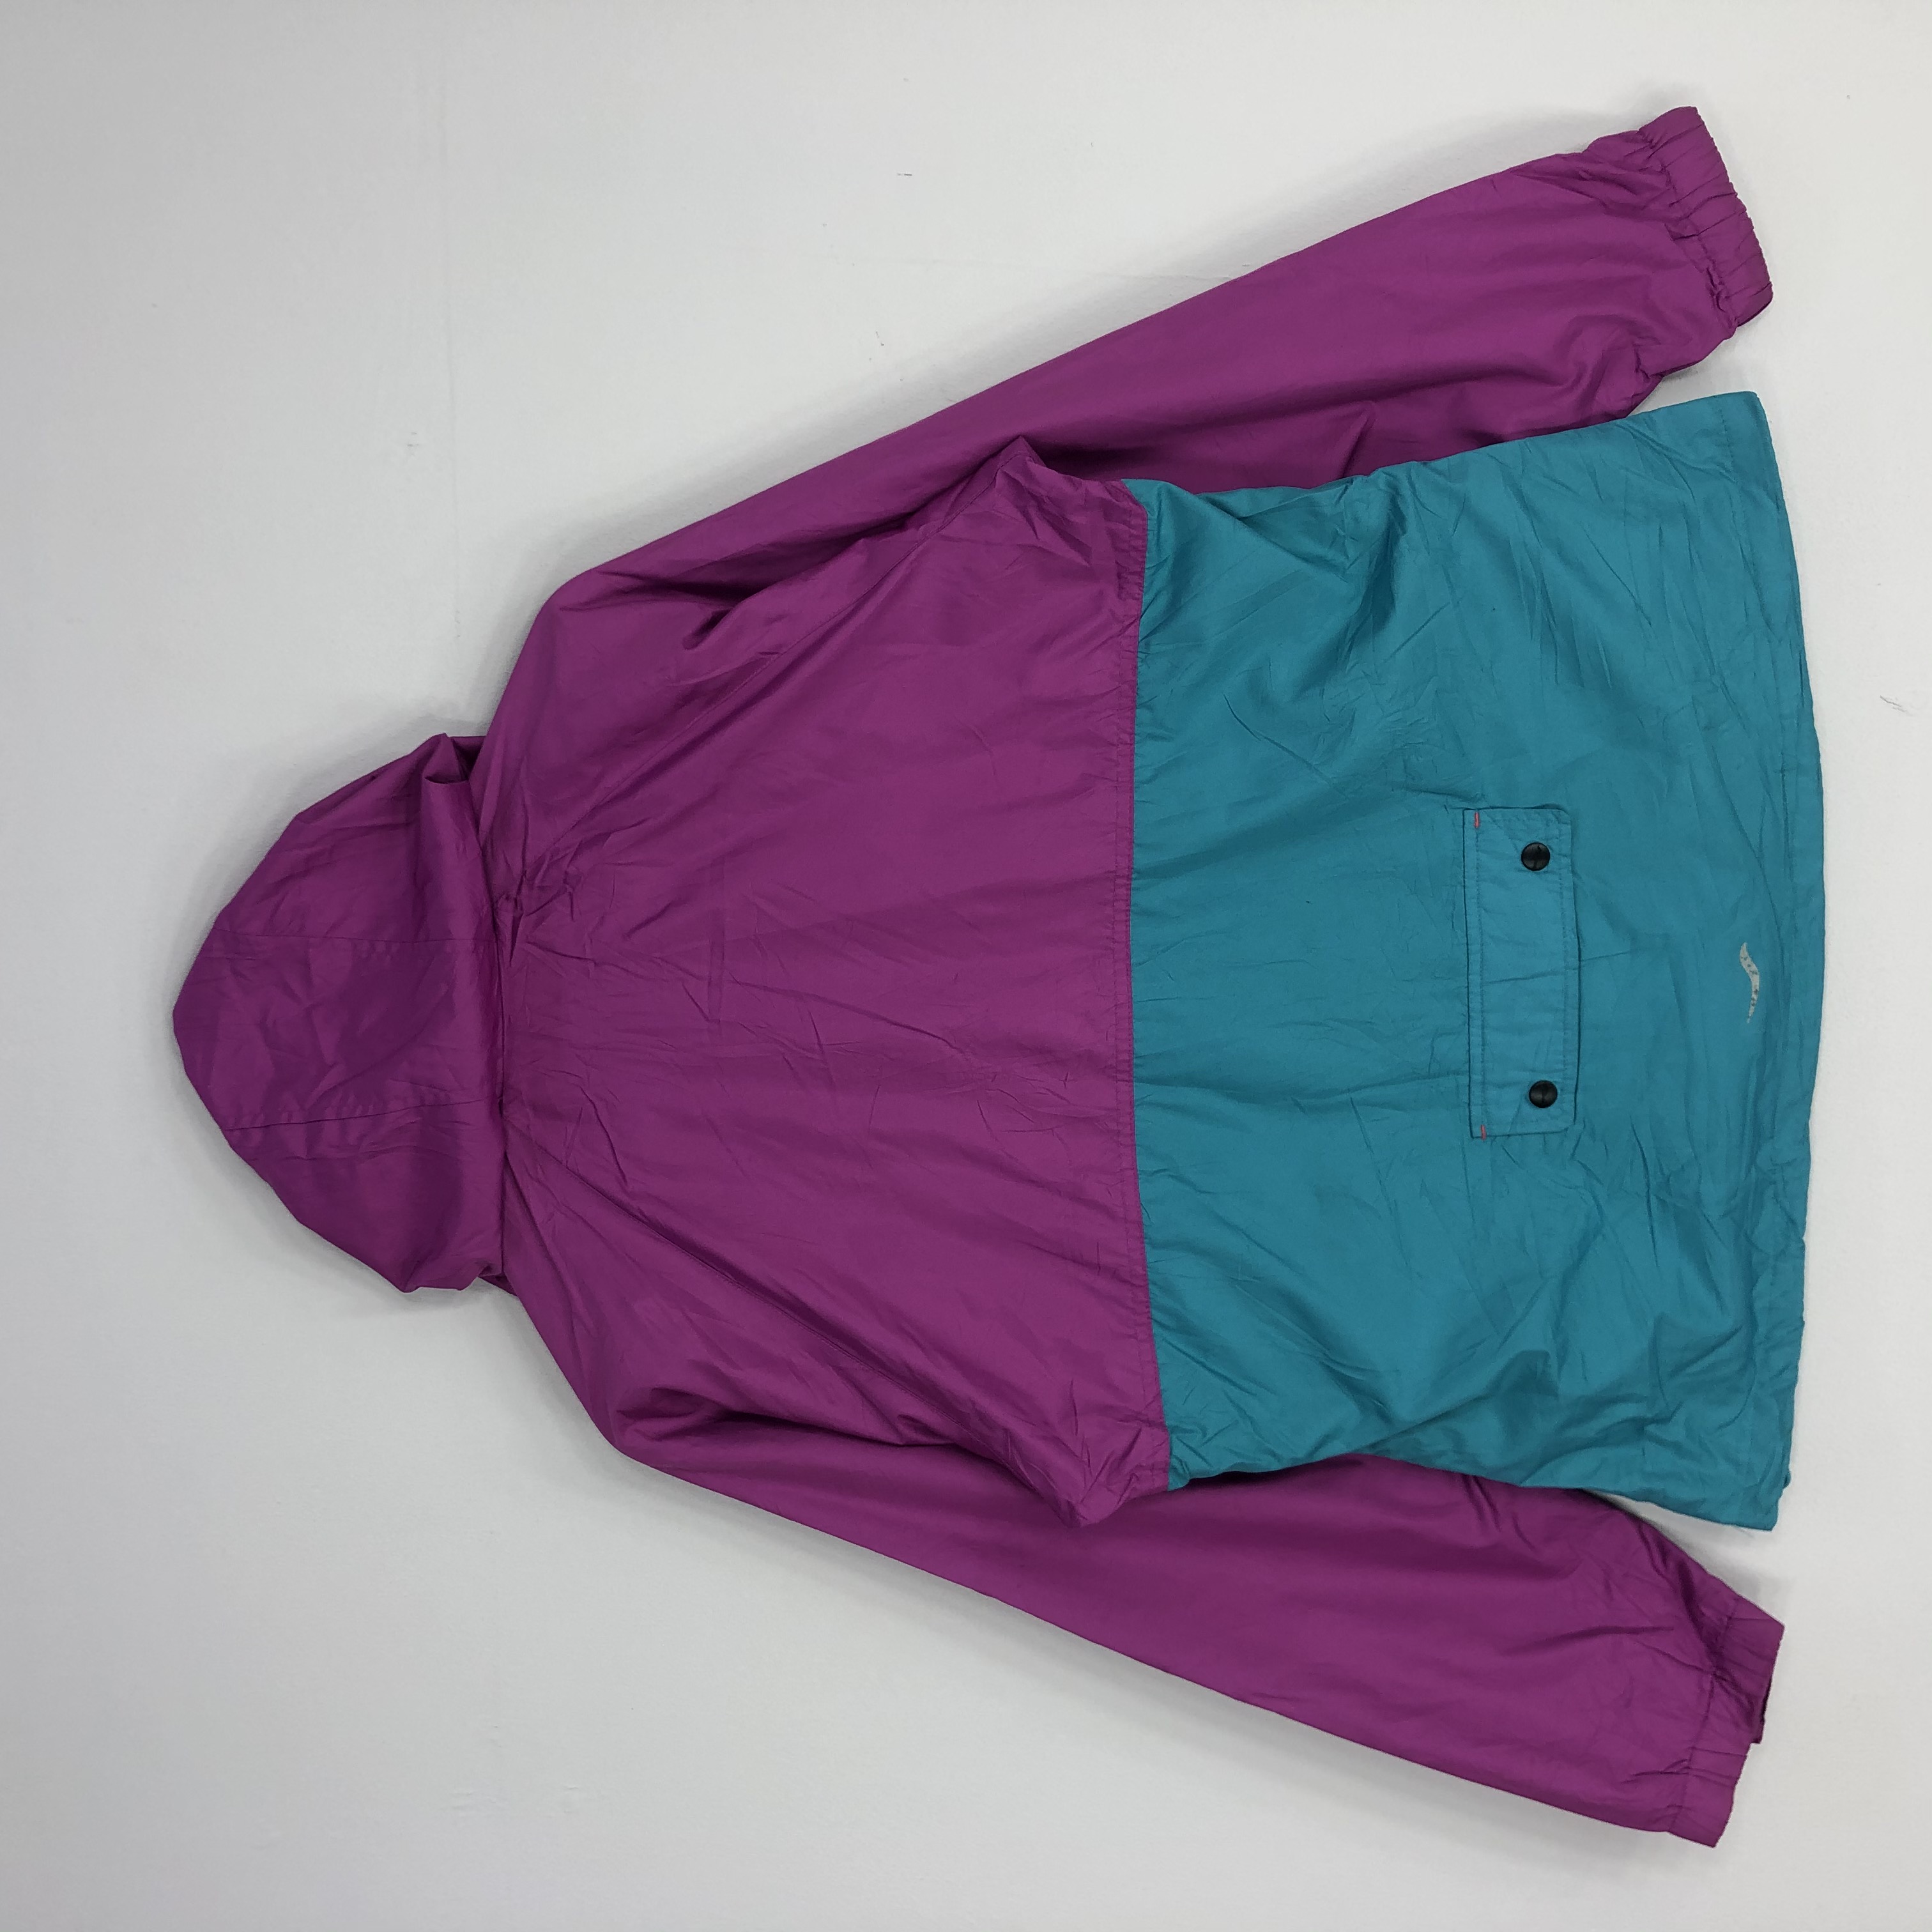 Saucony Zipper Jacket Multicoloured Jacket Large Size - 2